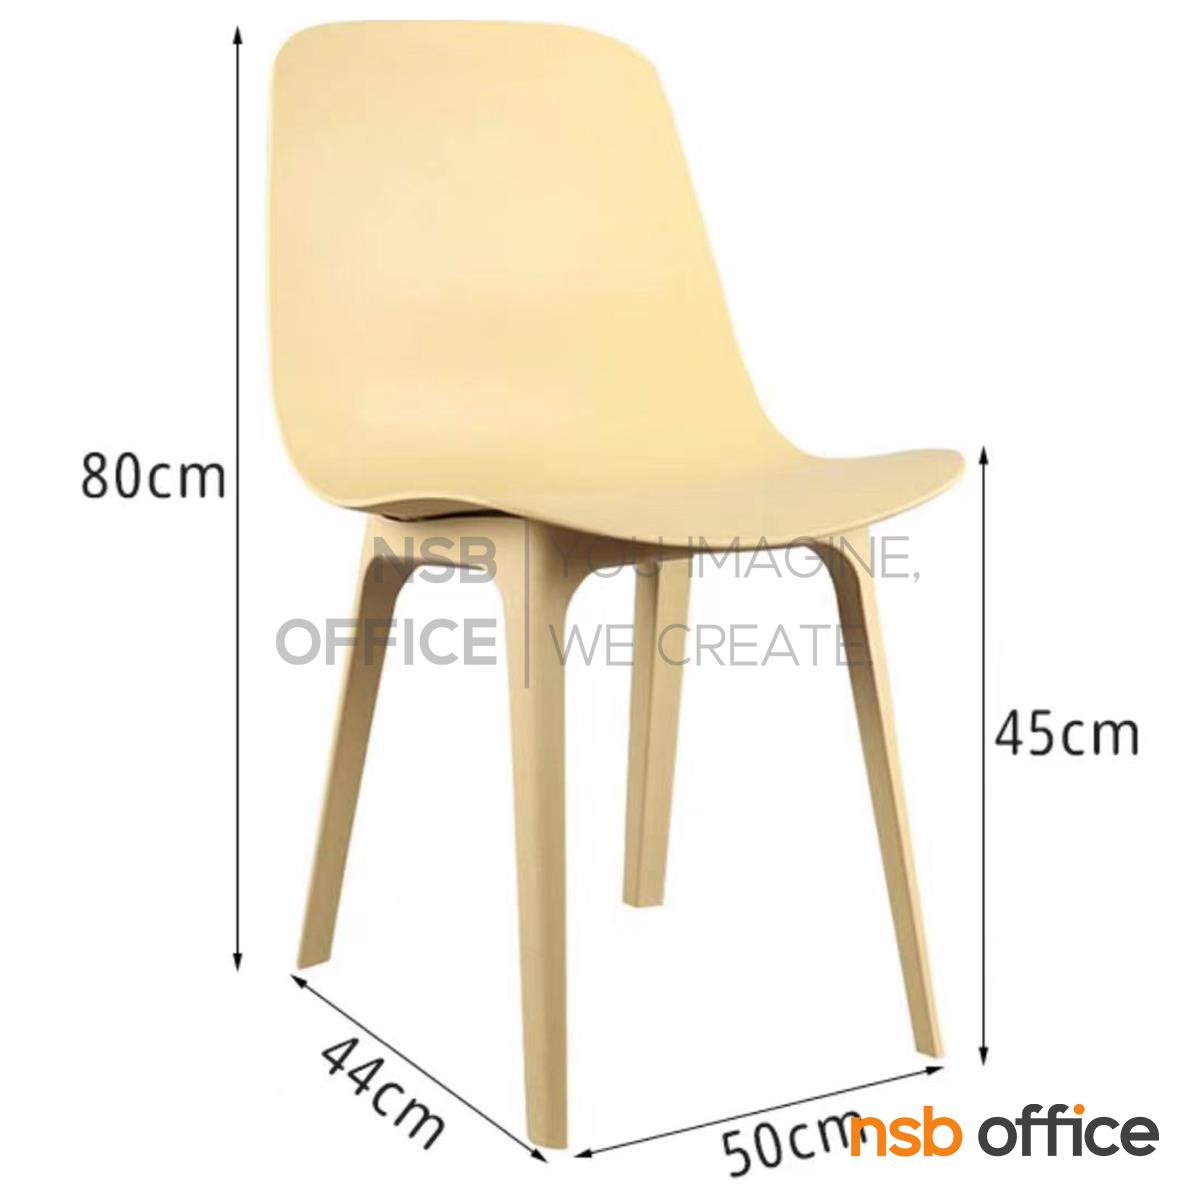 เก้าอี้โมเดิร์นพลาสติก รุ่น Baymon (เบม่อน) ขนาด 50W cm.  